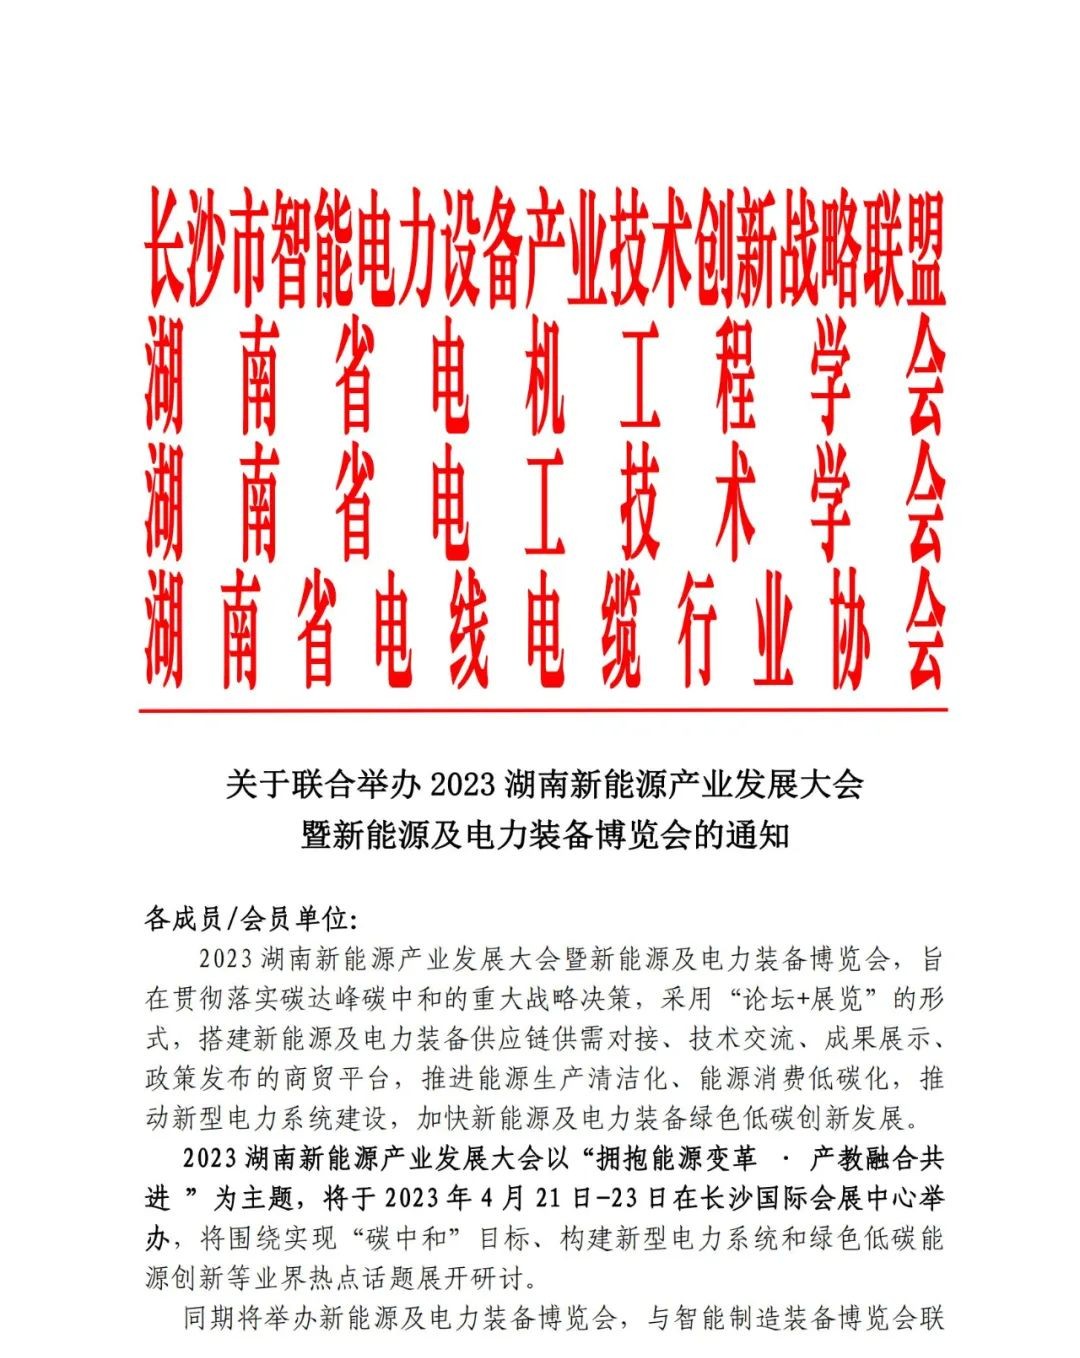 邀请函 | 2023湖南新能源产业发展大会暨新能源及电力装备博览会